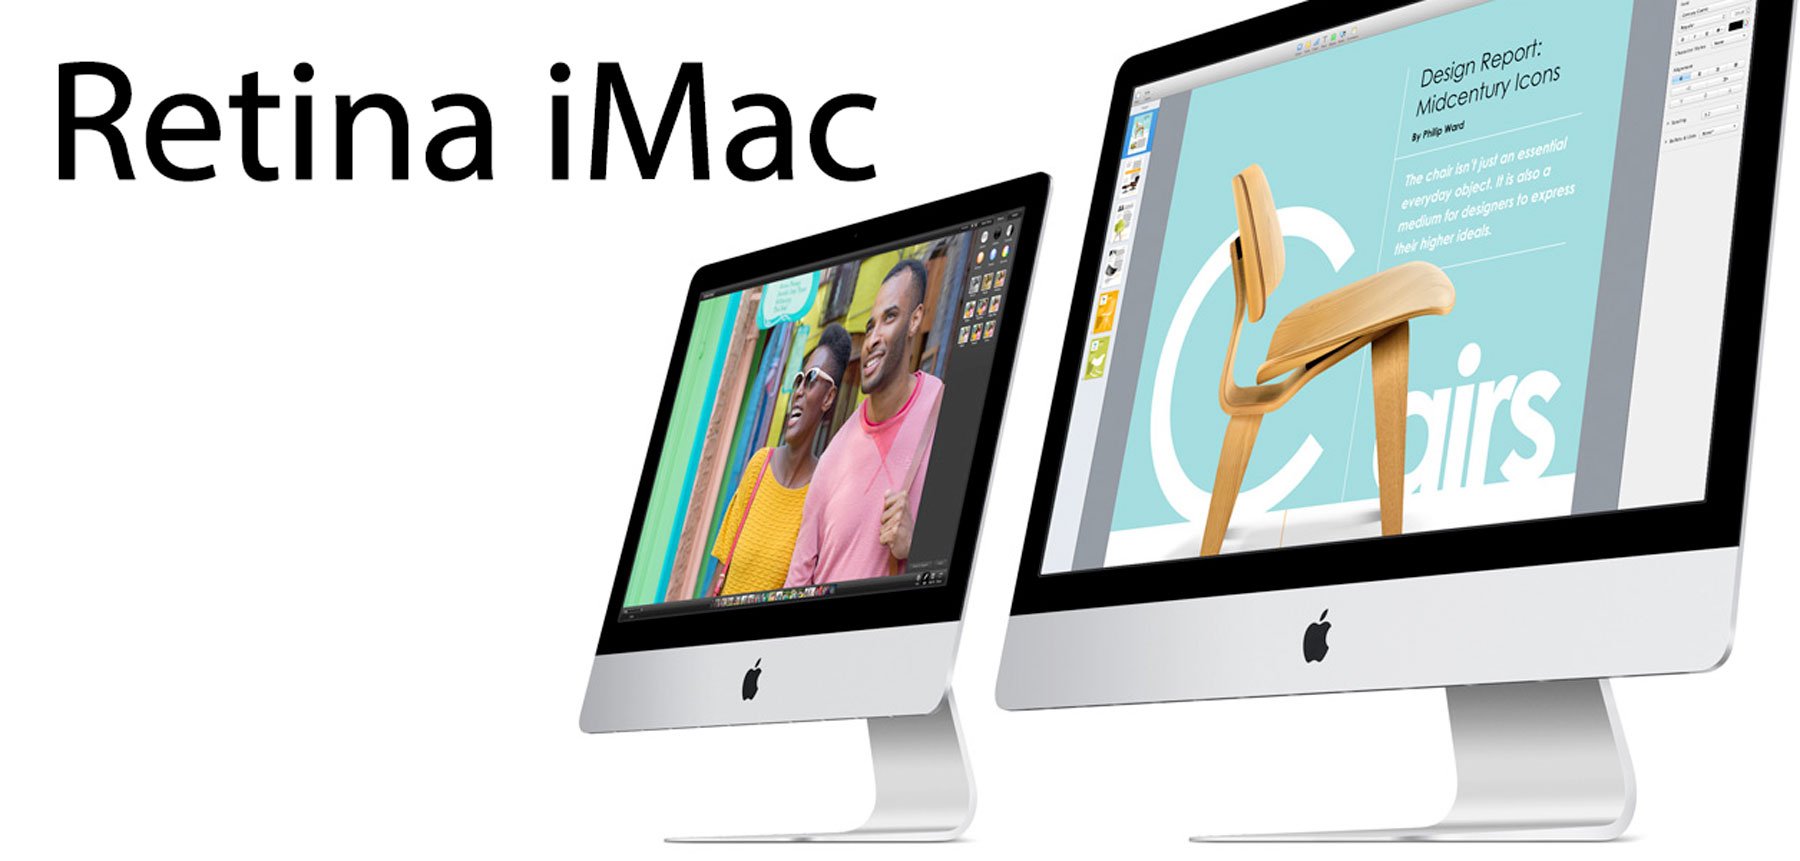 Retina iMac kommt, Retina MacBook Air später 4